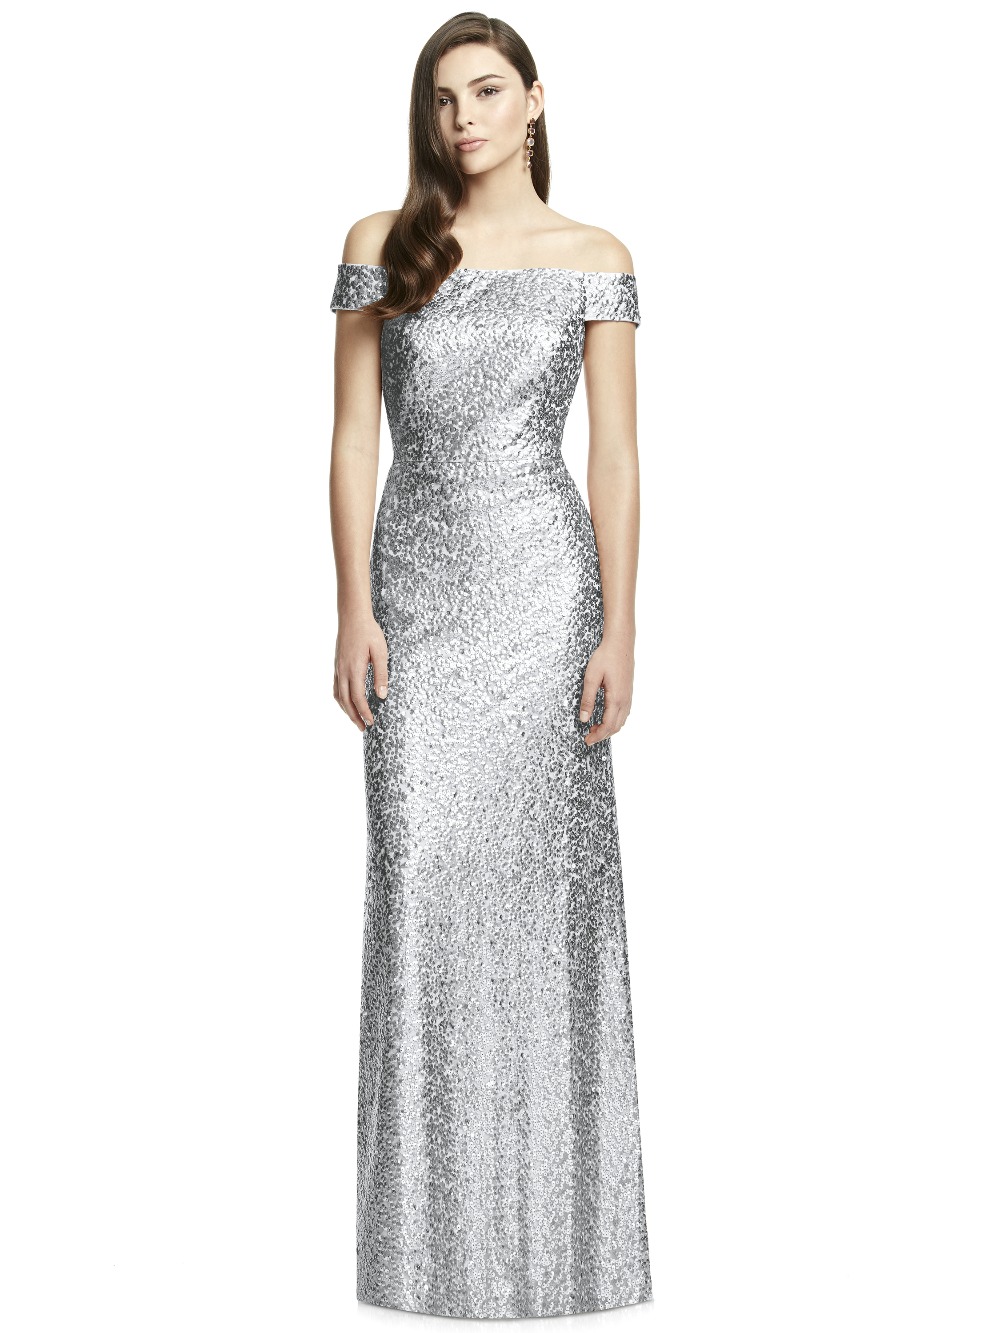 sequin-bridesmaid-dresses5